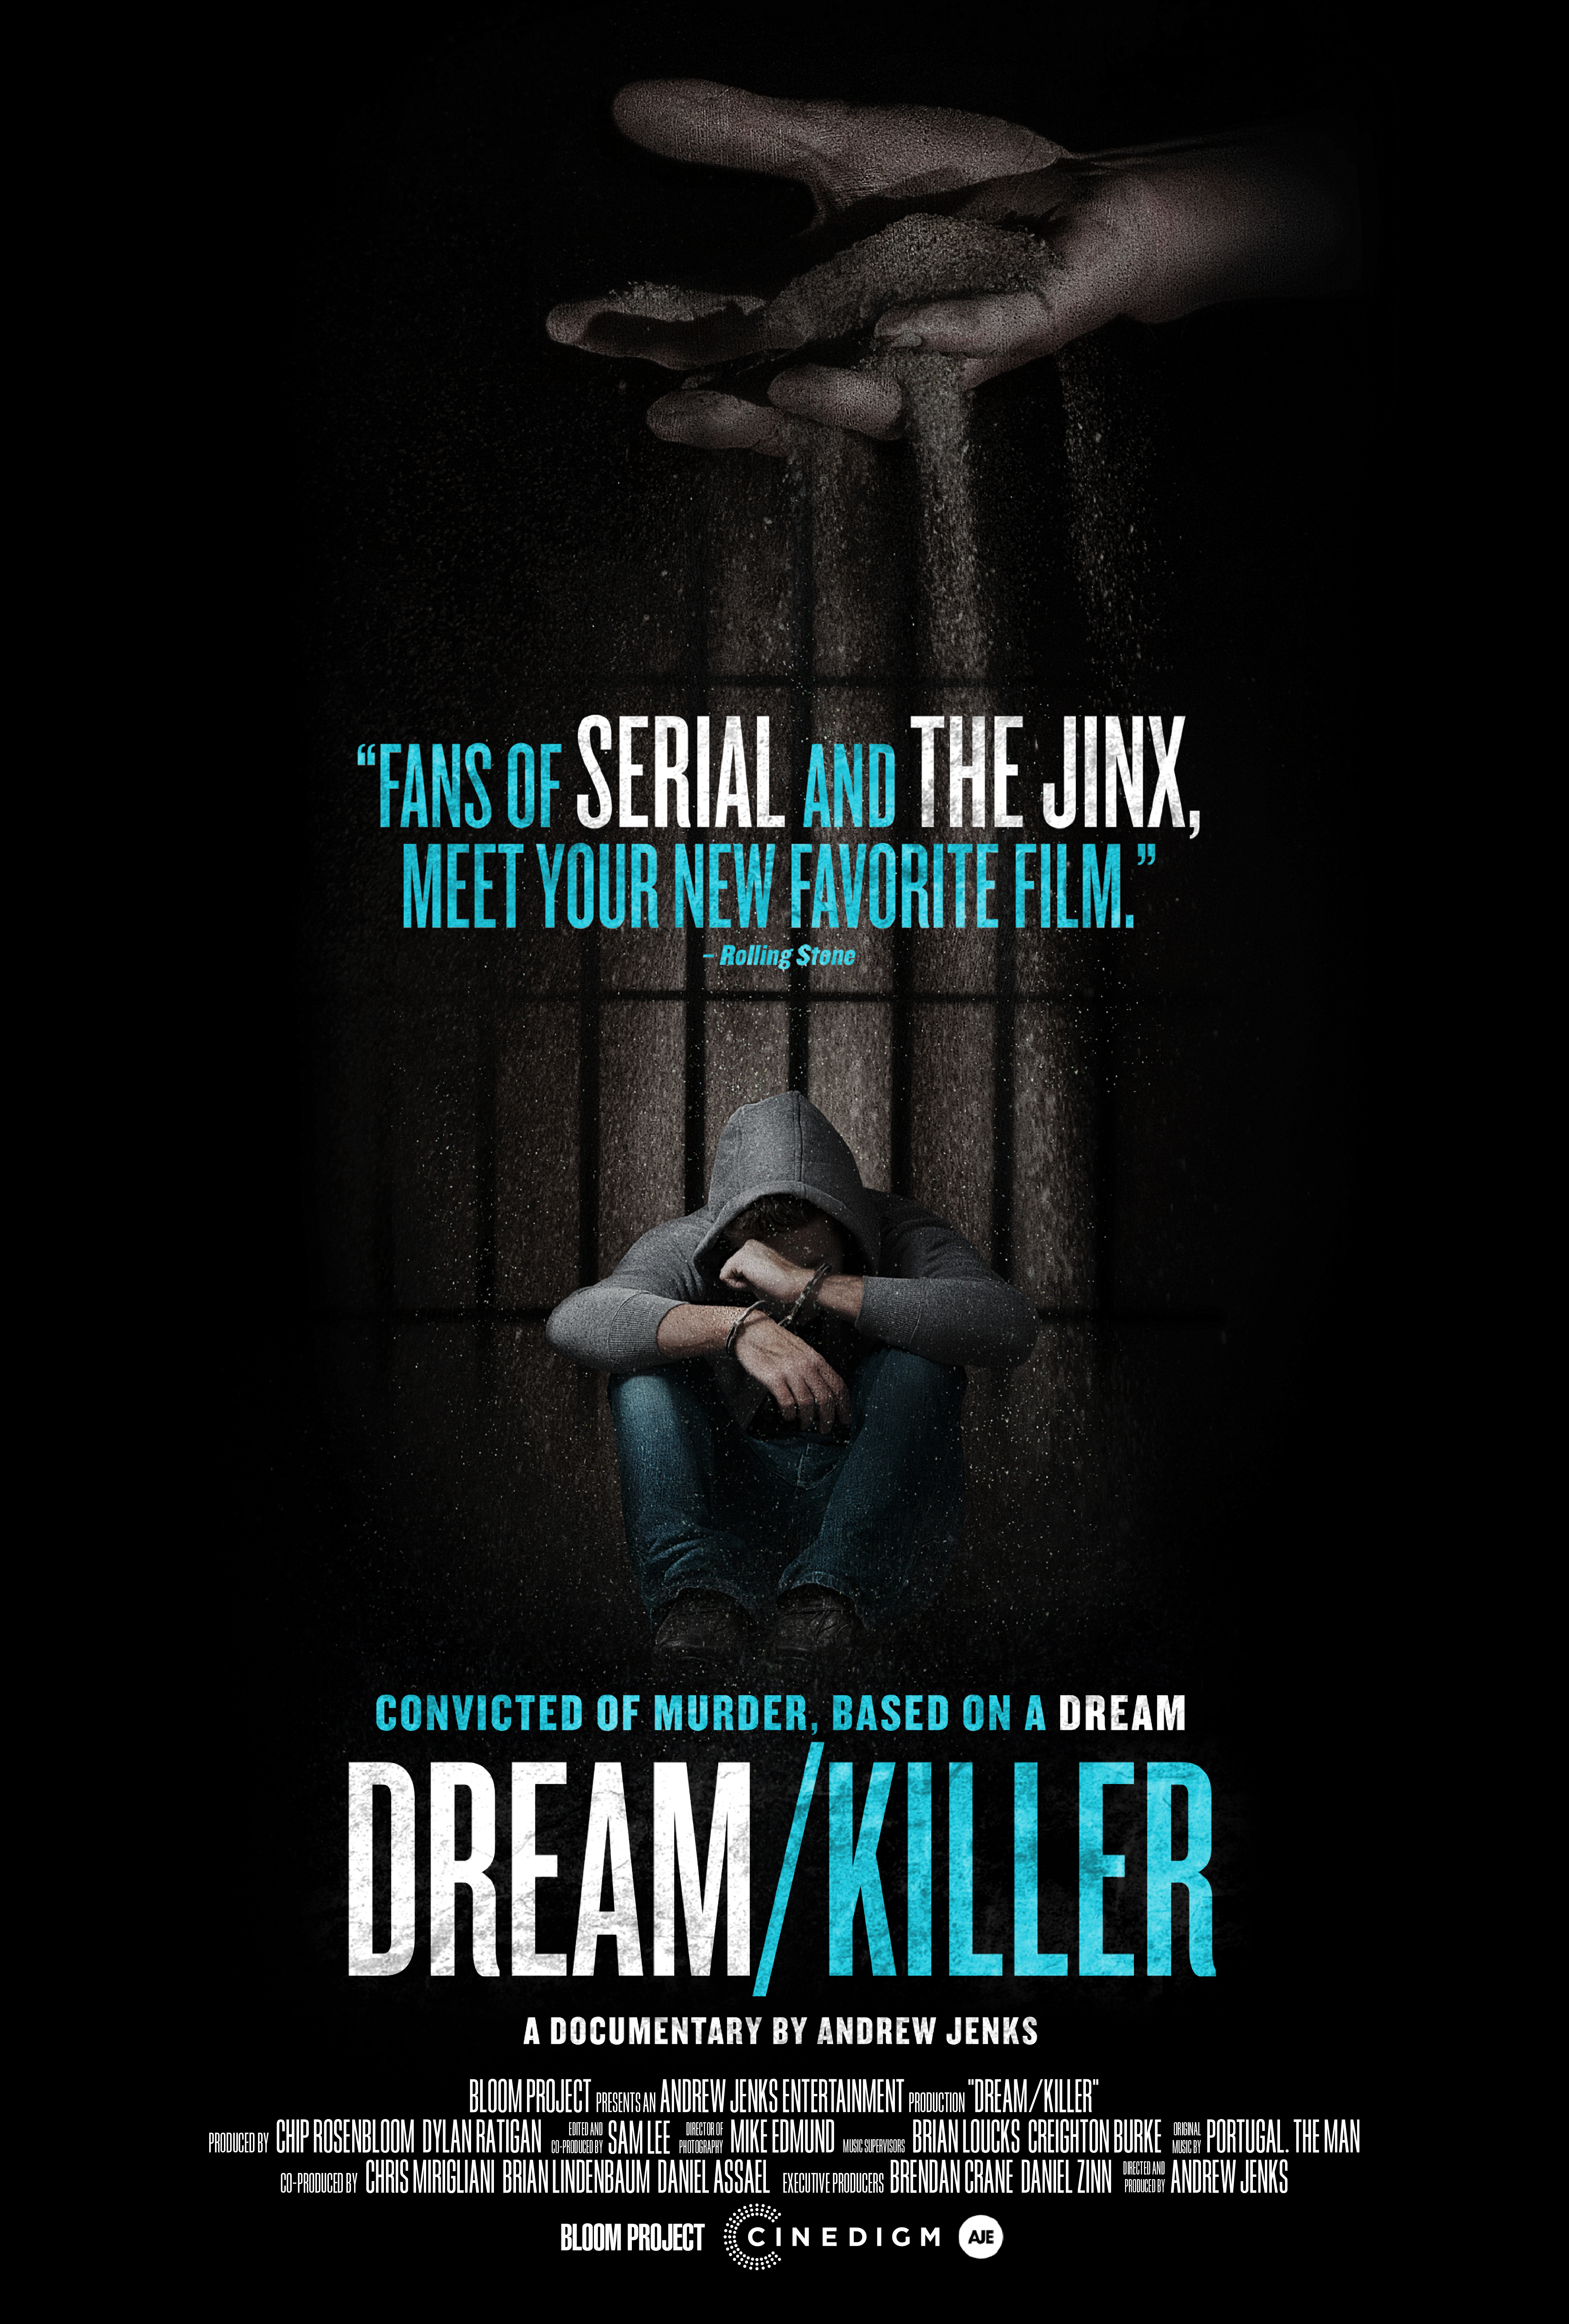 Nonton film Dream Killer layarkaca21 indoxx1 ganool online streaming terbaru